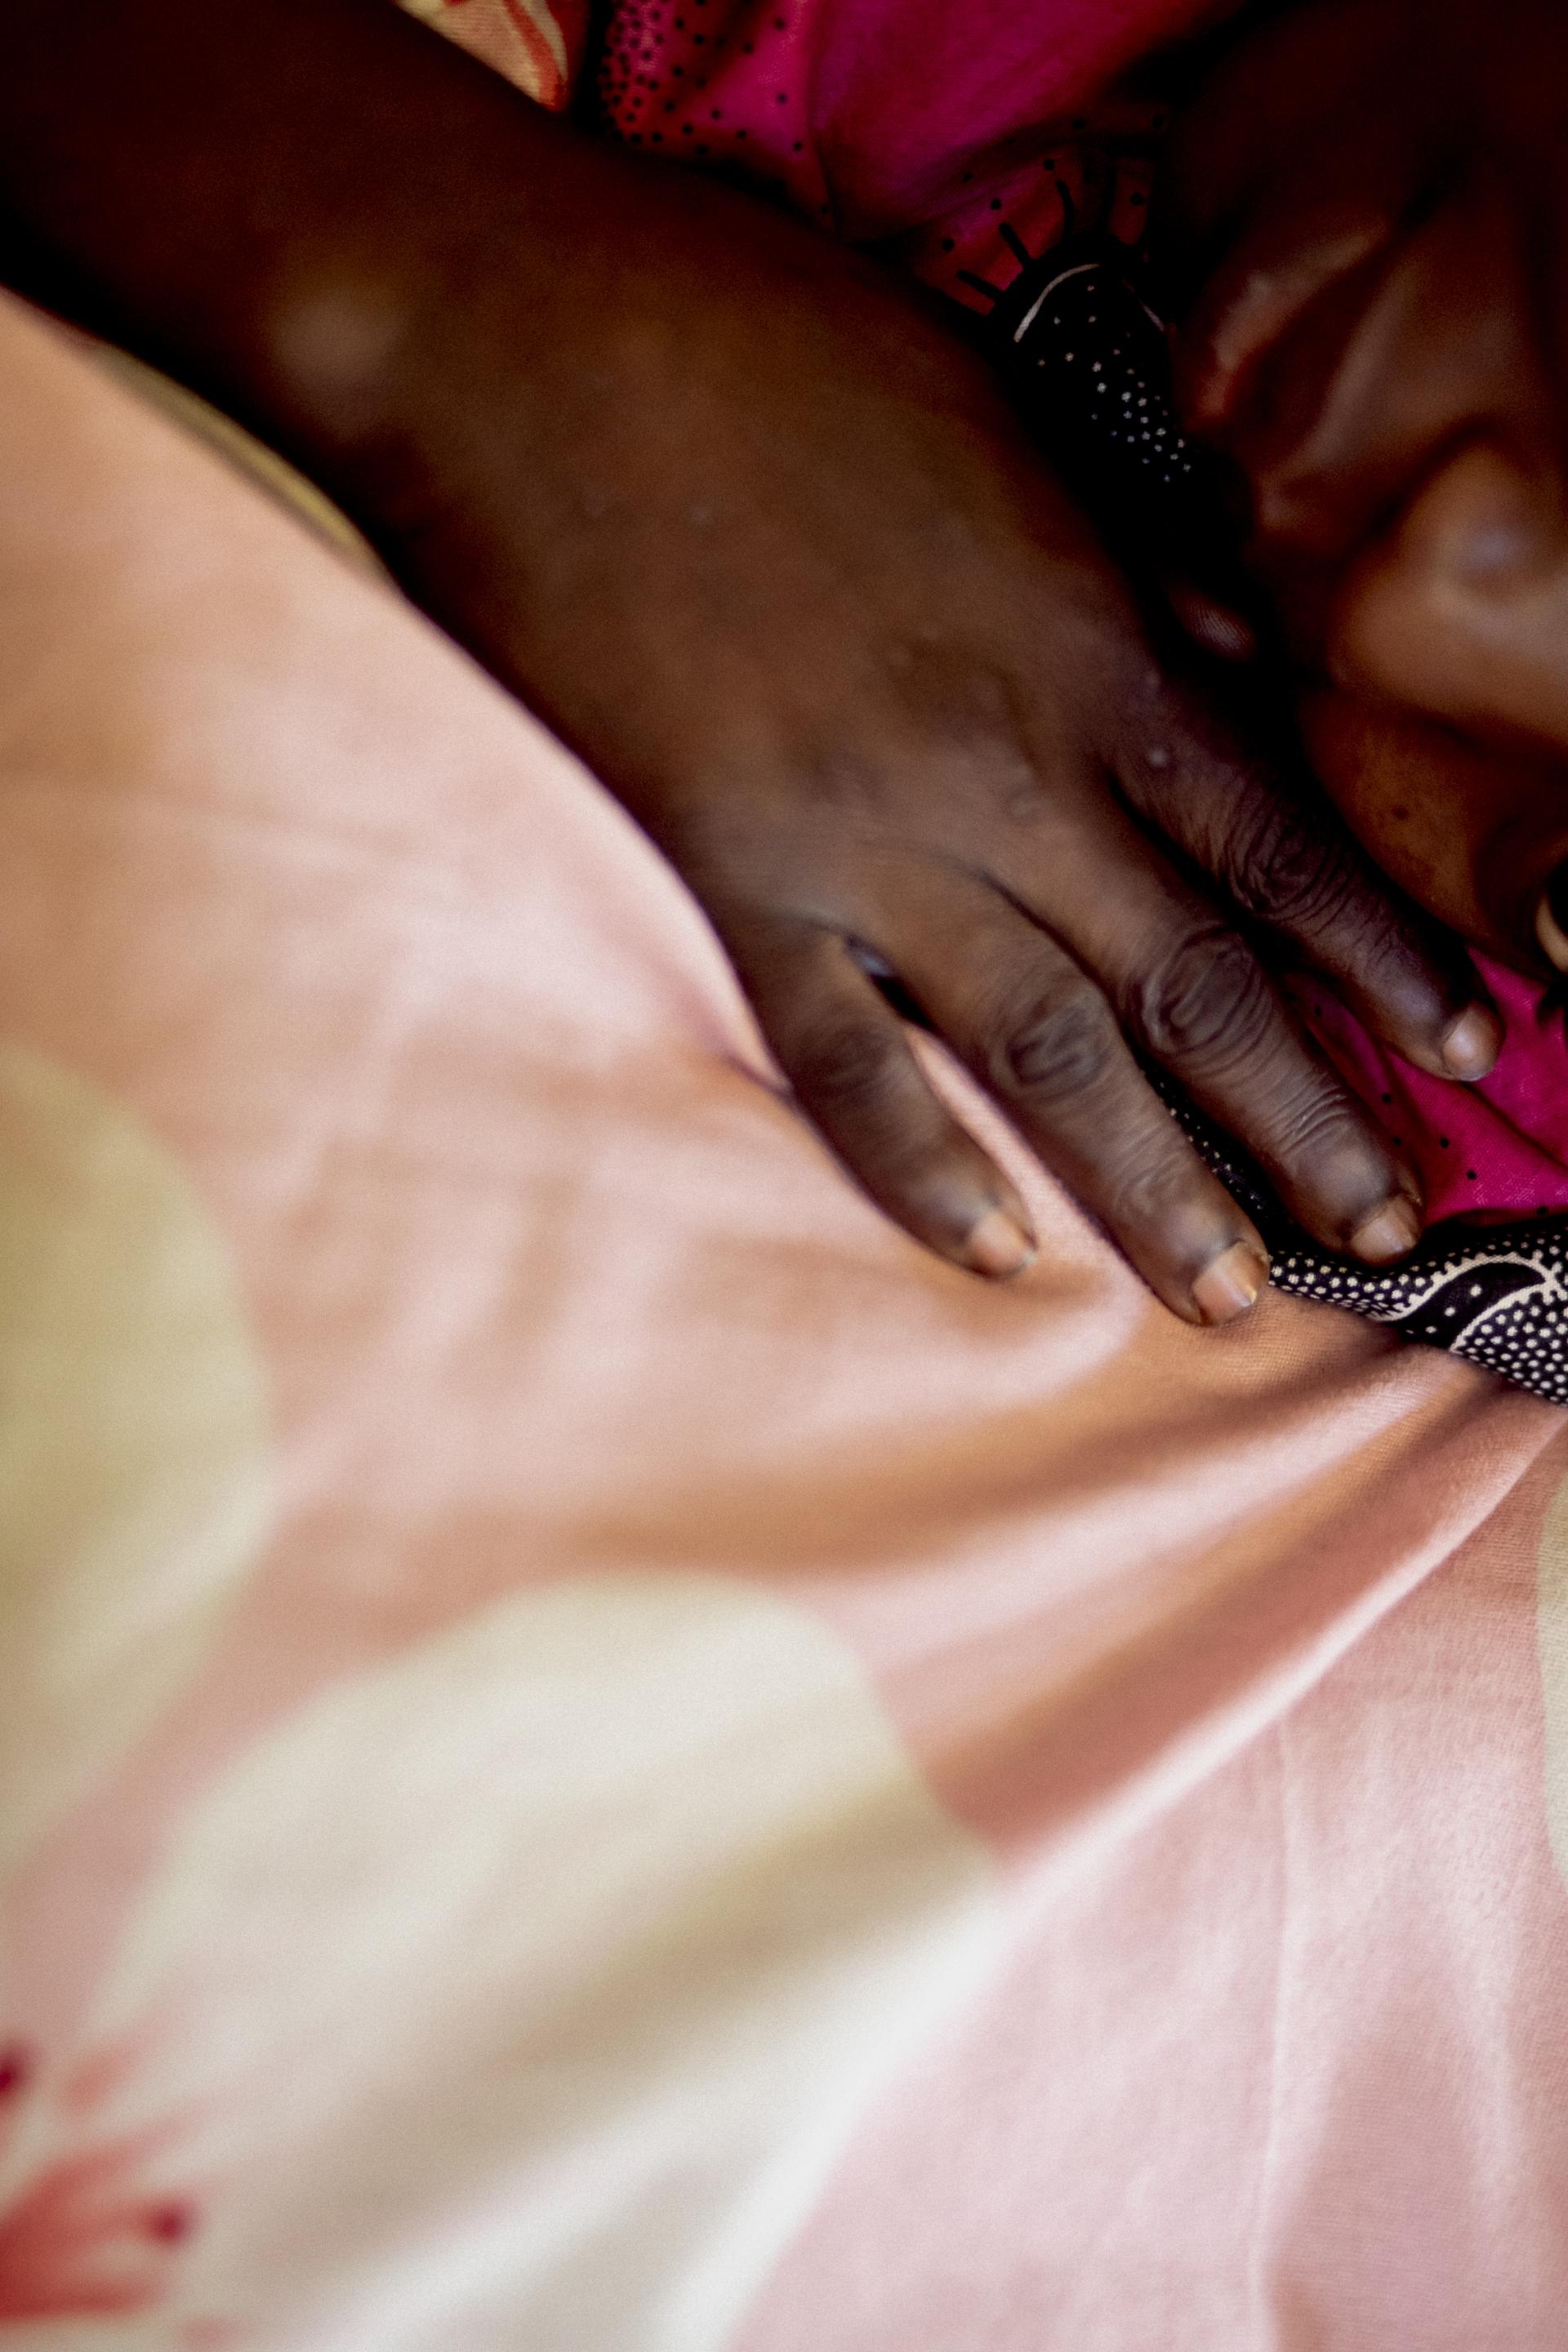 VIH/Sida, une situation critique en Centrafrique 